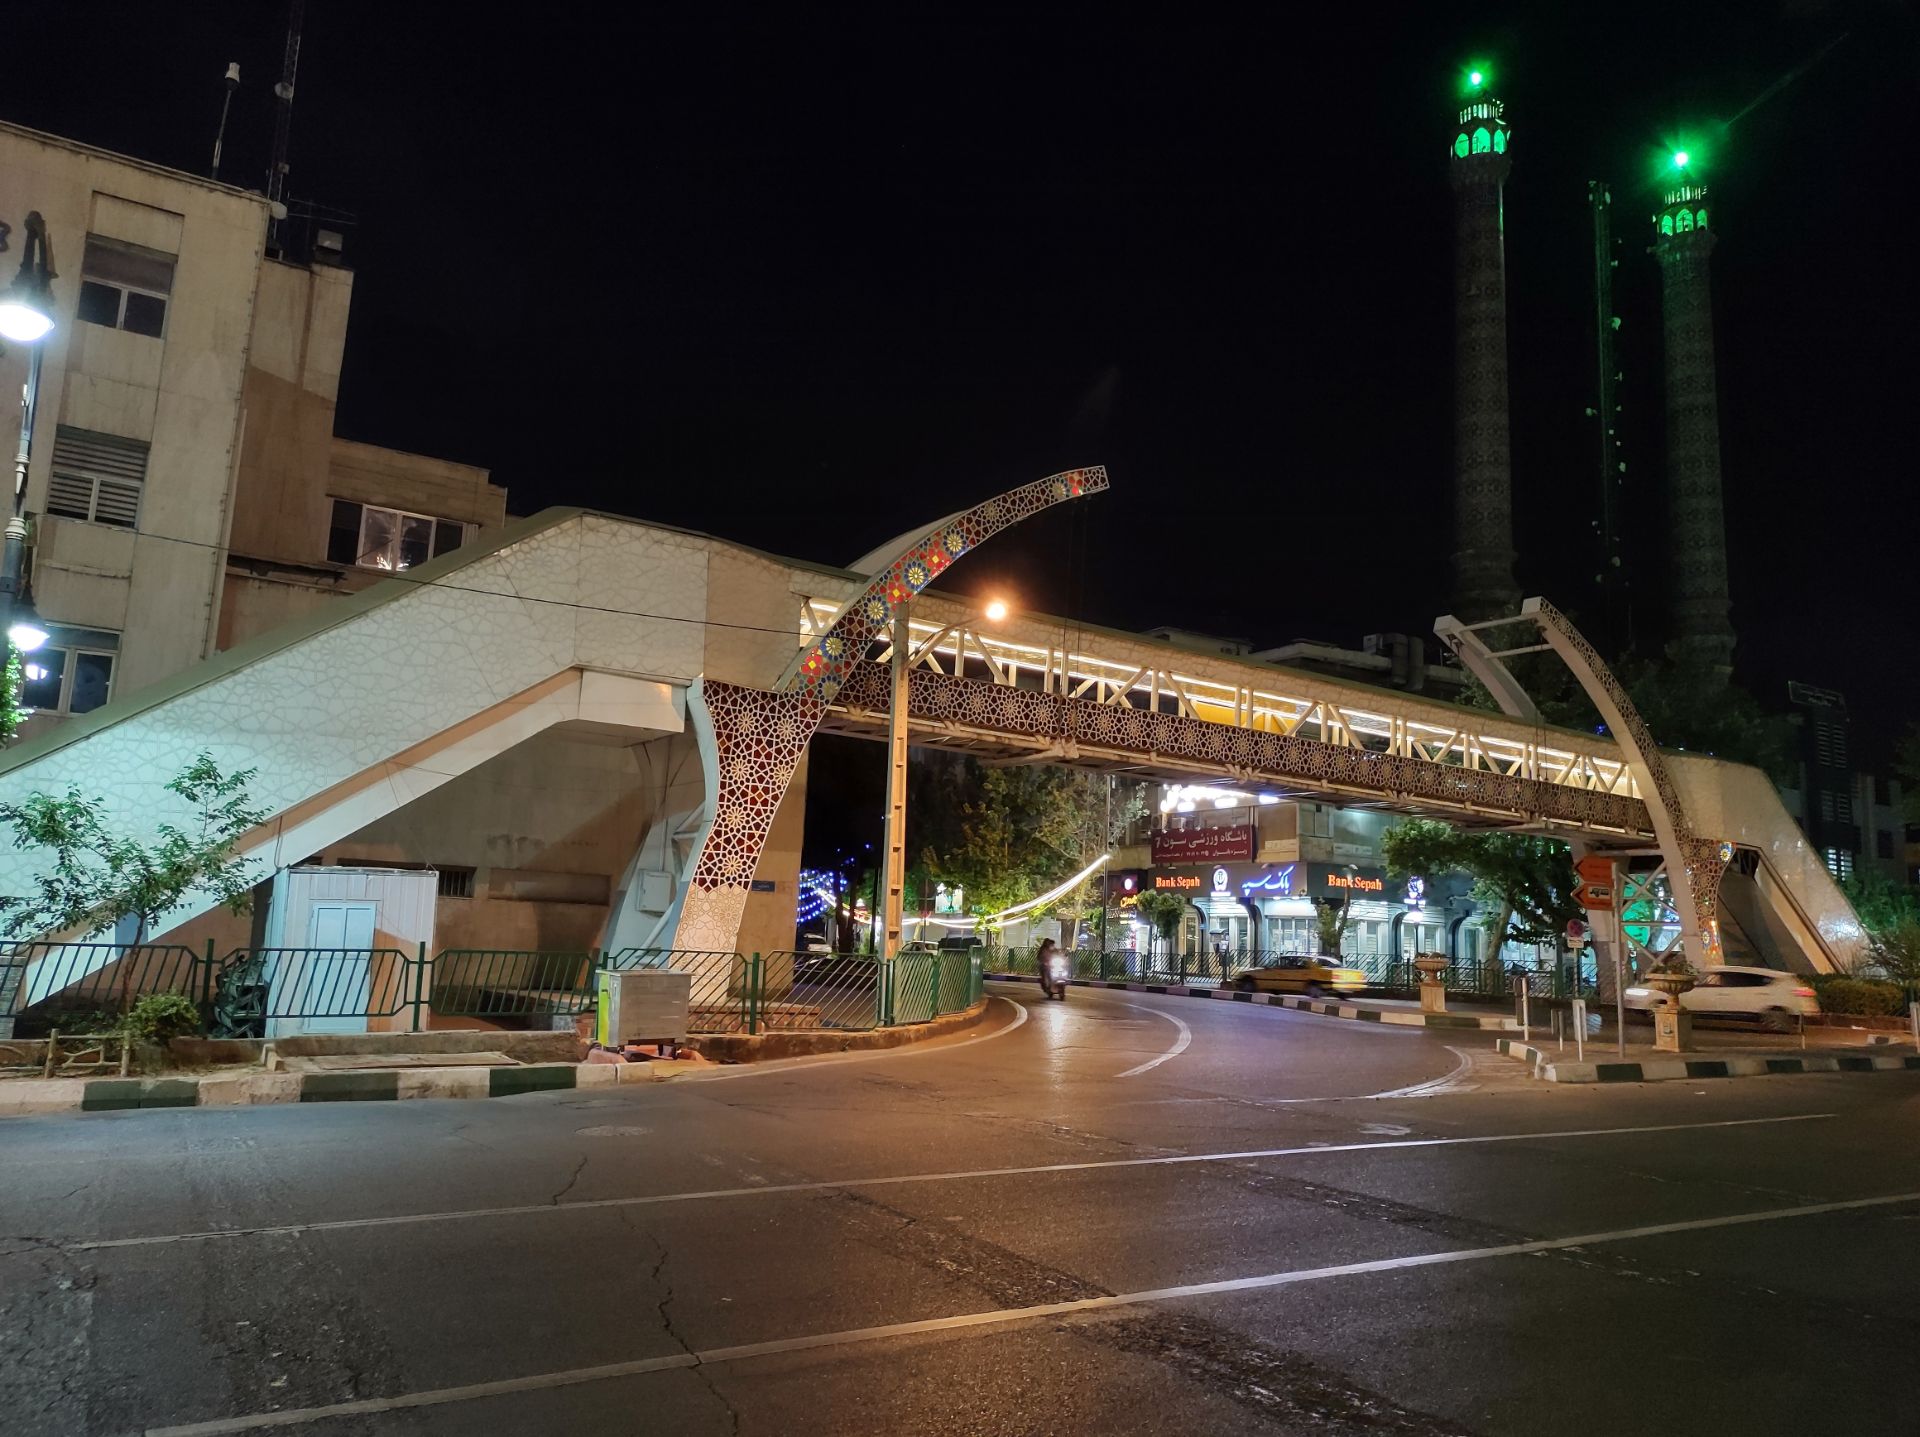 نمونه عکس دوربین اصلی موتورولا موتو جی ۹ پلاس در شب - نمای خیابان و پل عابر